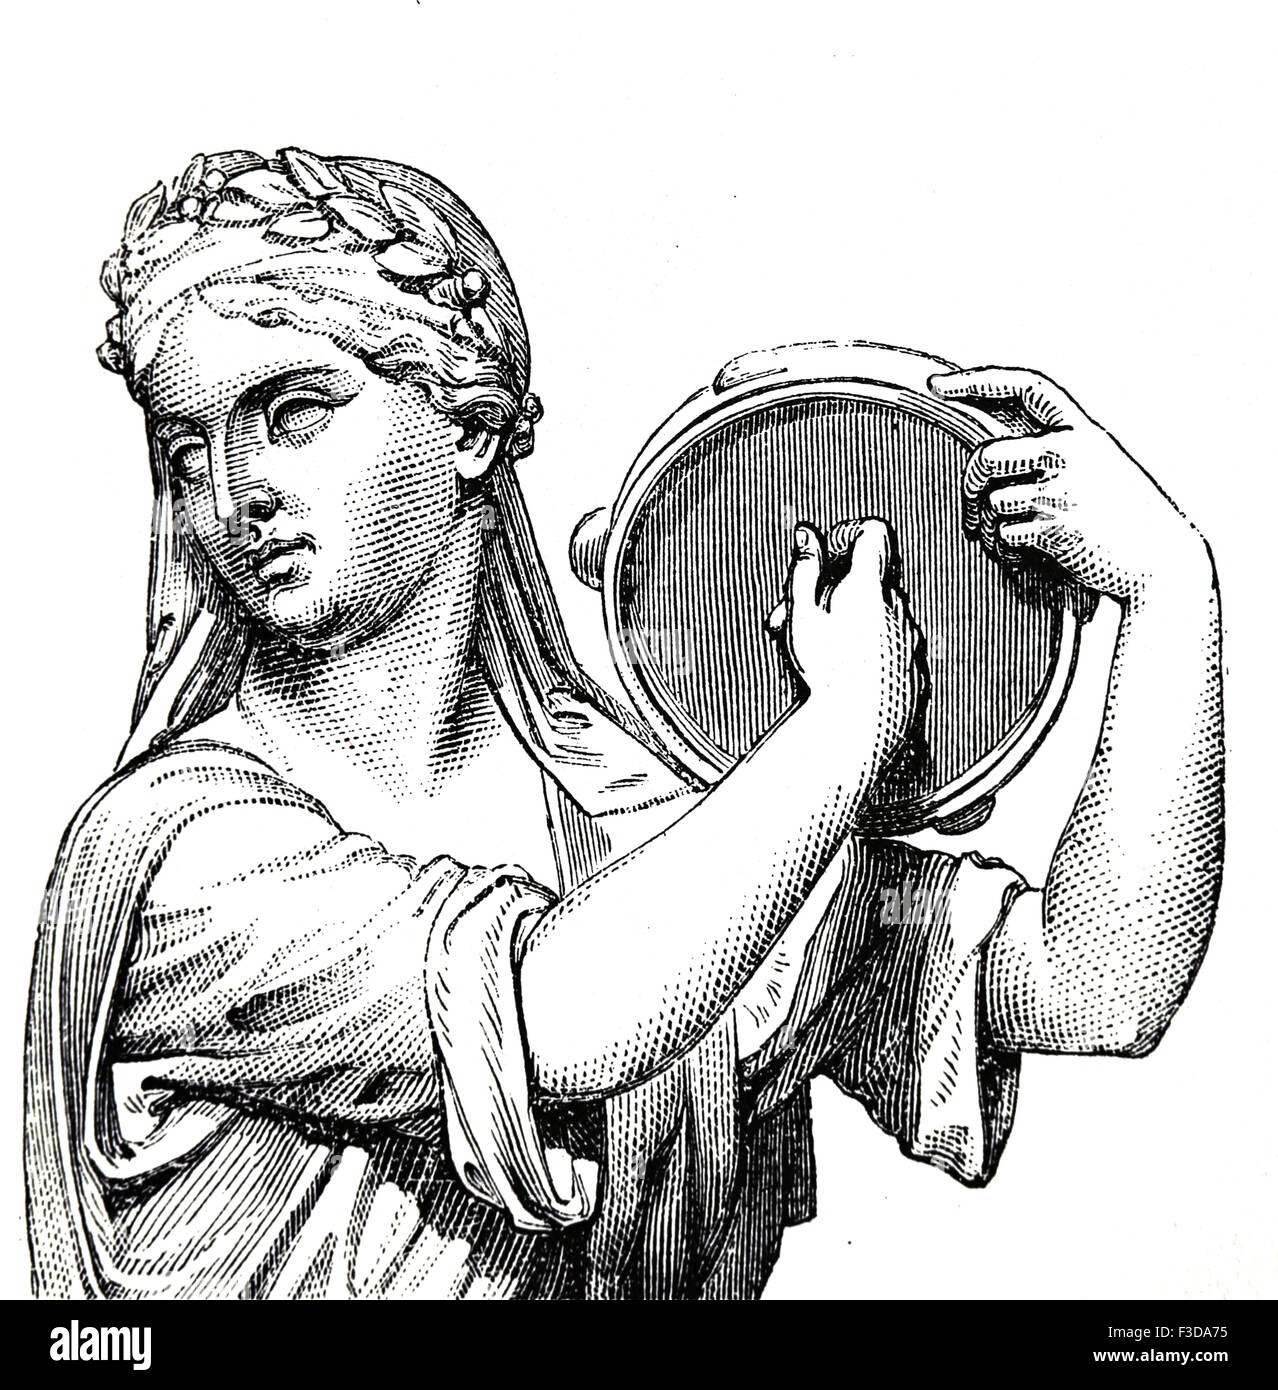 L'âge antique. Période romaine. La lecture du tympan. Type de tambourin. Gravure, 19ème siècle. Banque D'Images